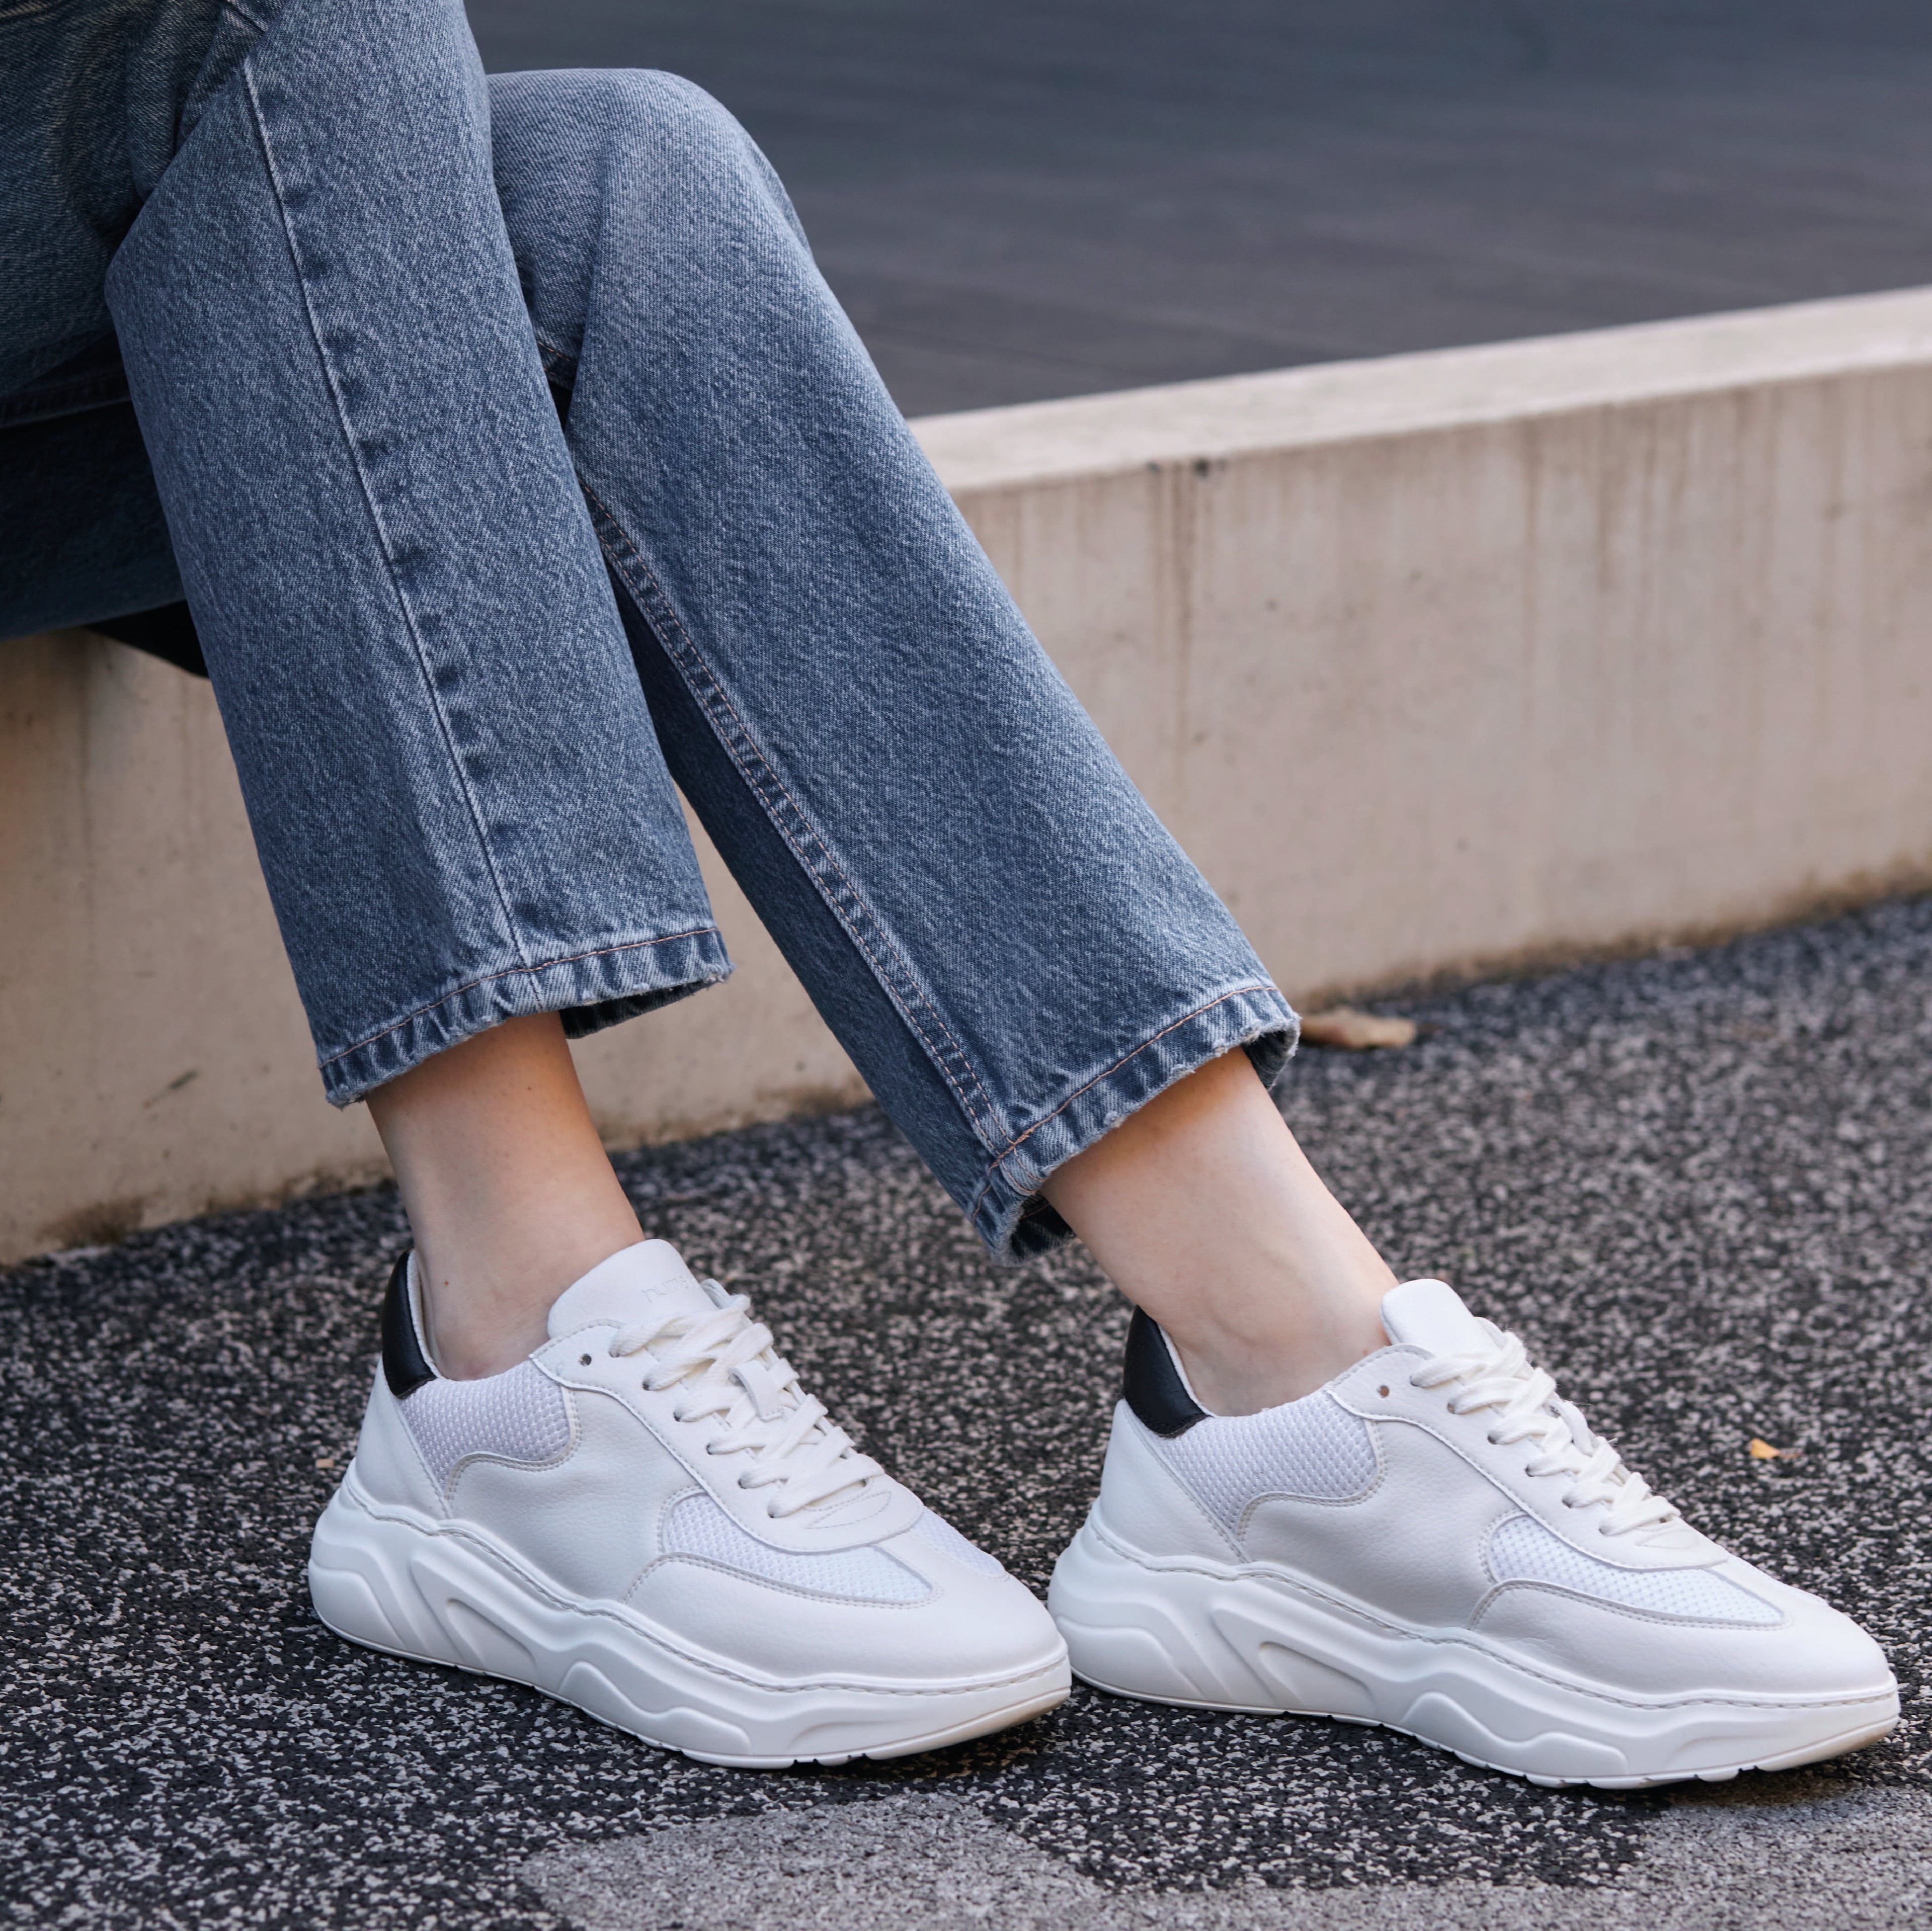 Evolution V2 Sustainable Sneaker White On Model